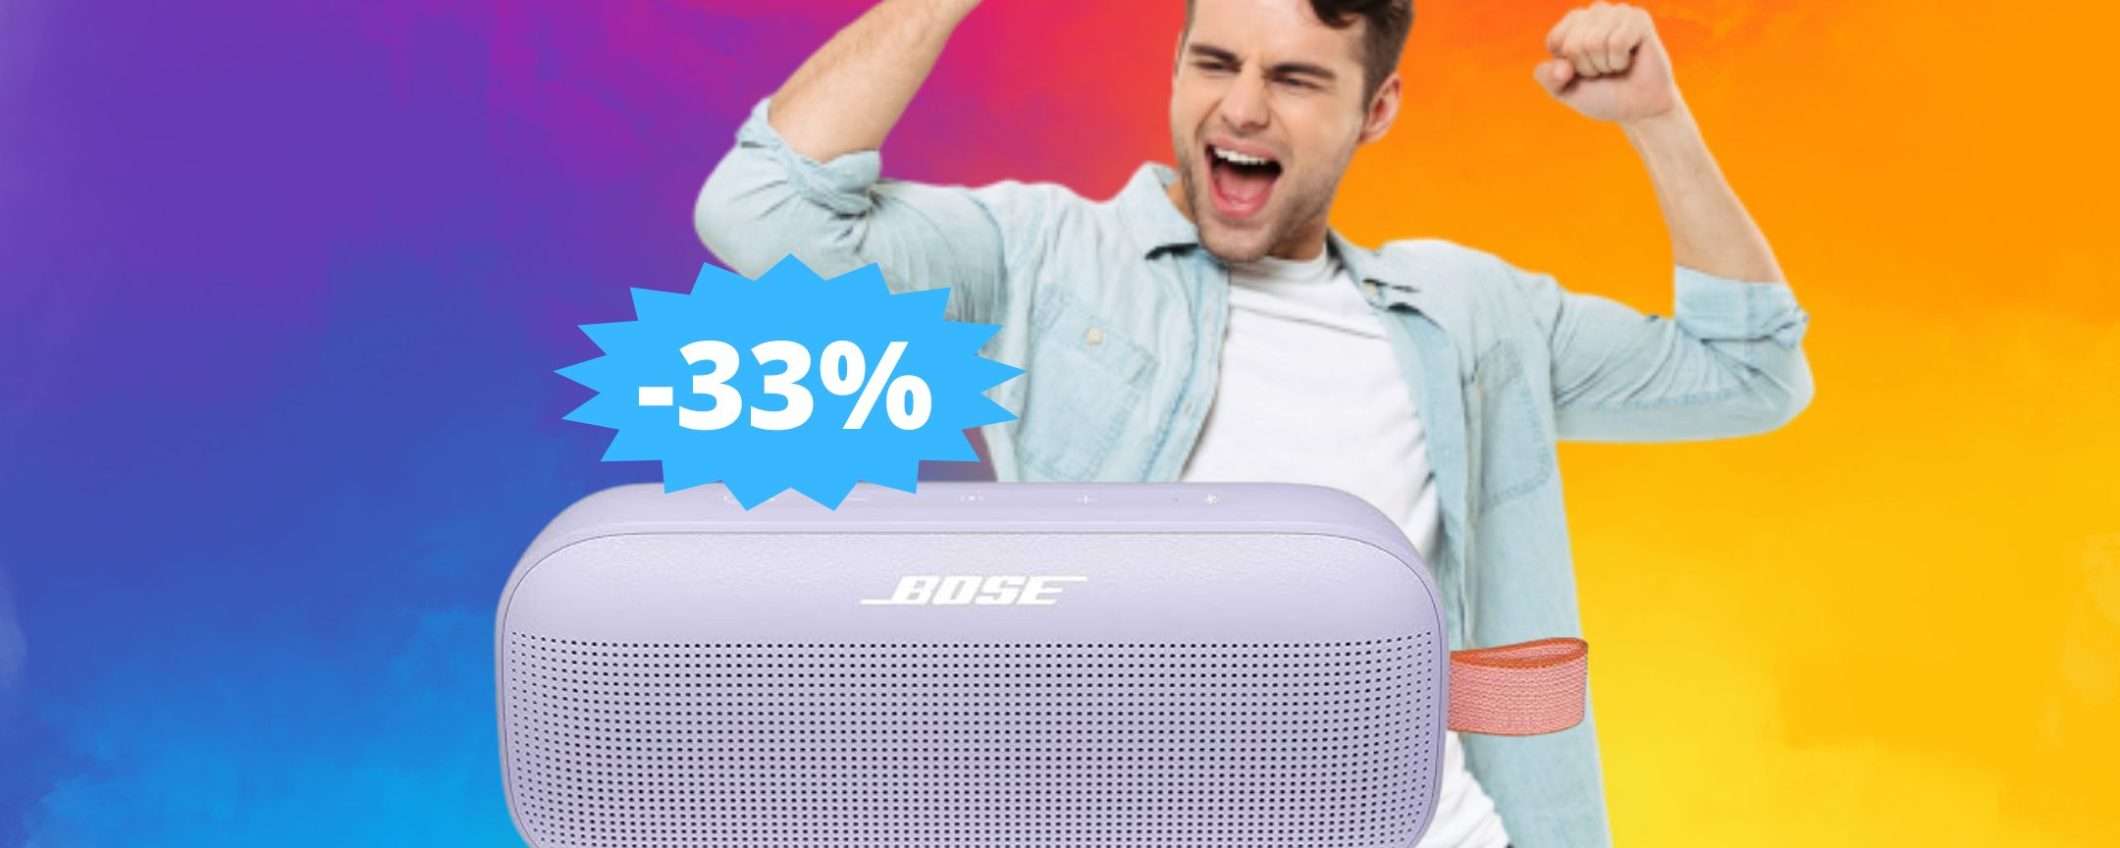 Bose SoundLink Flex: l'AFFARE che stavi cercando (-33%)